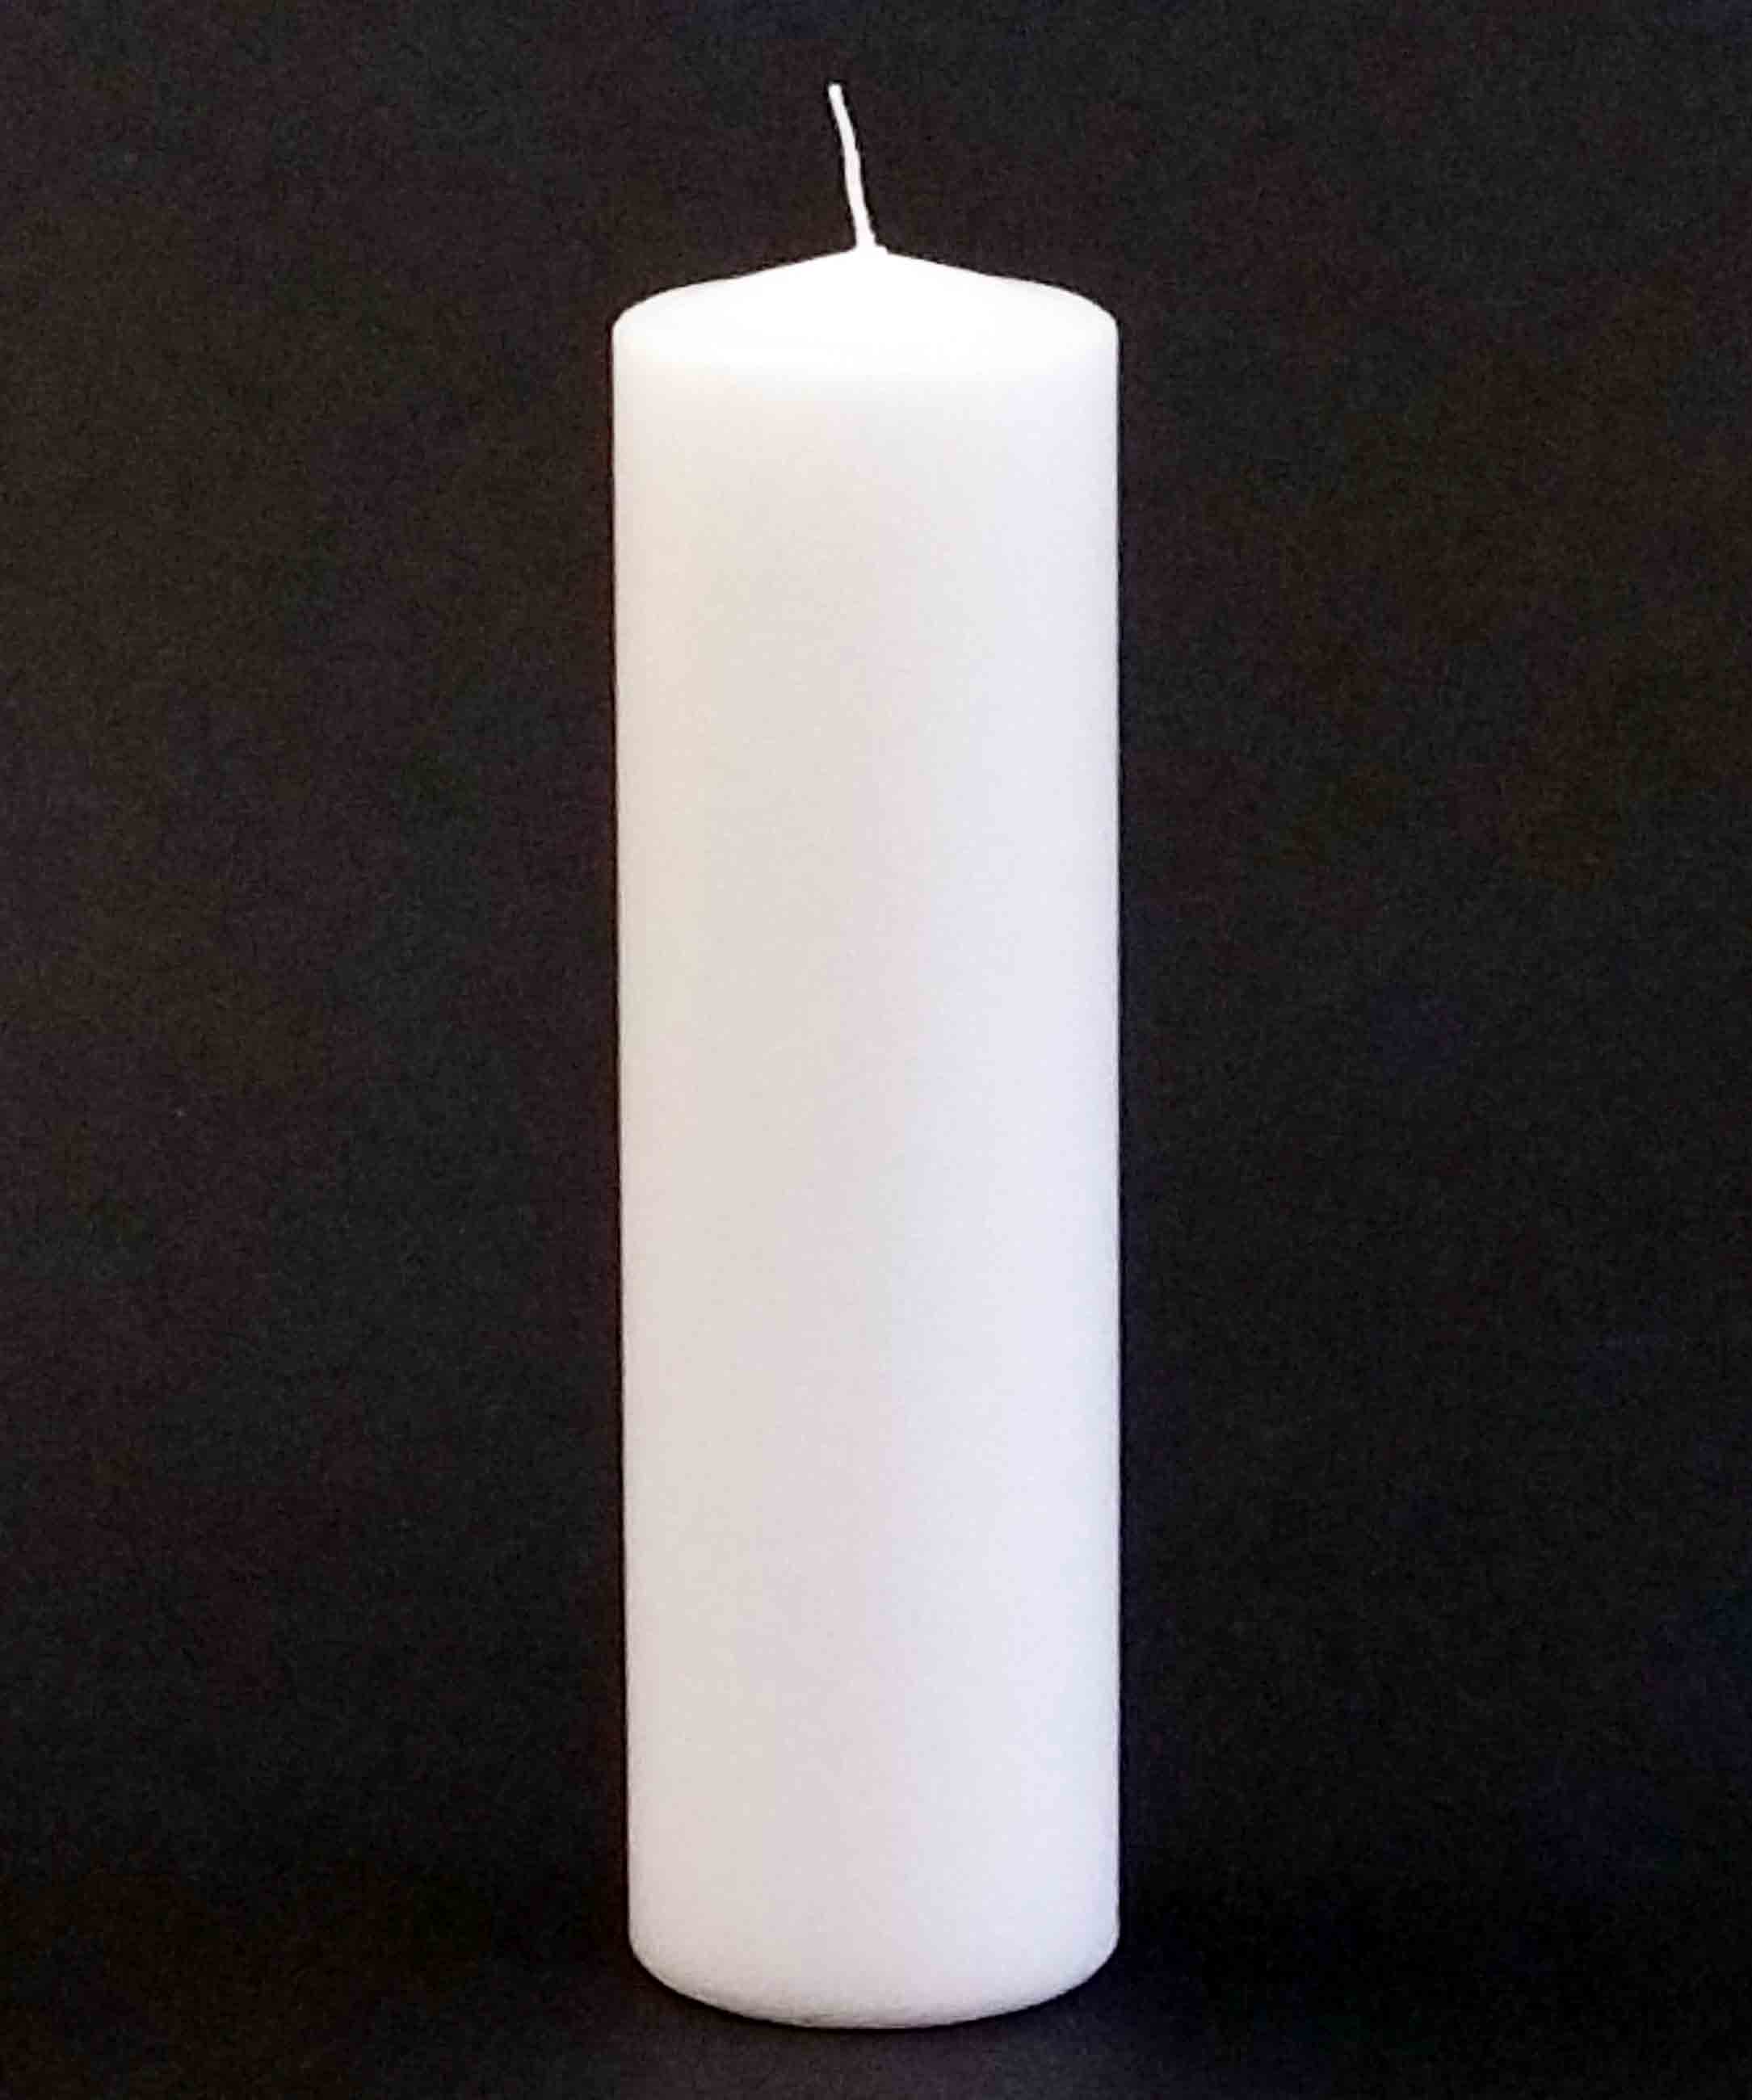 PCU10 - 10" Pillar Candle - 9.10 ea, 8.80/12